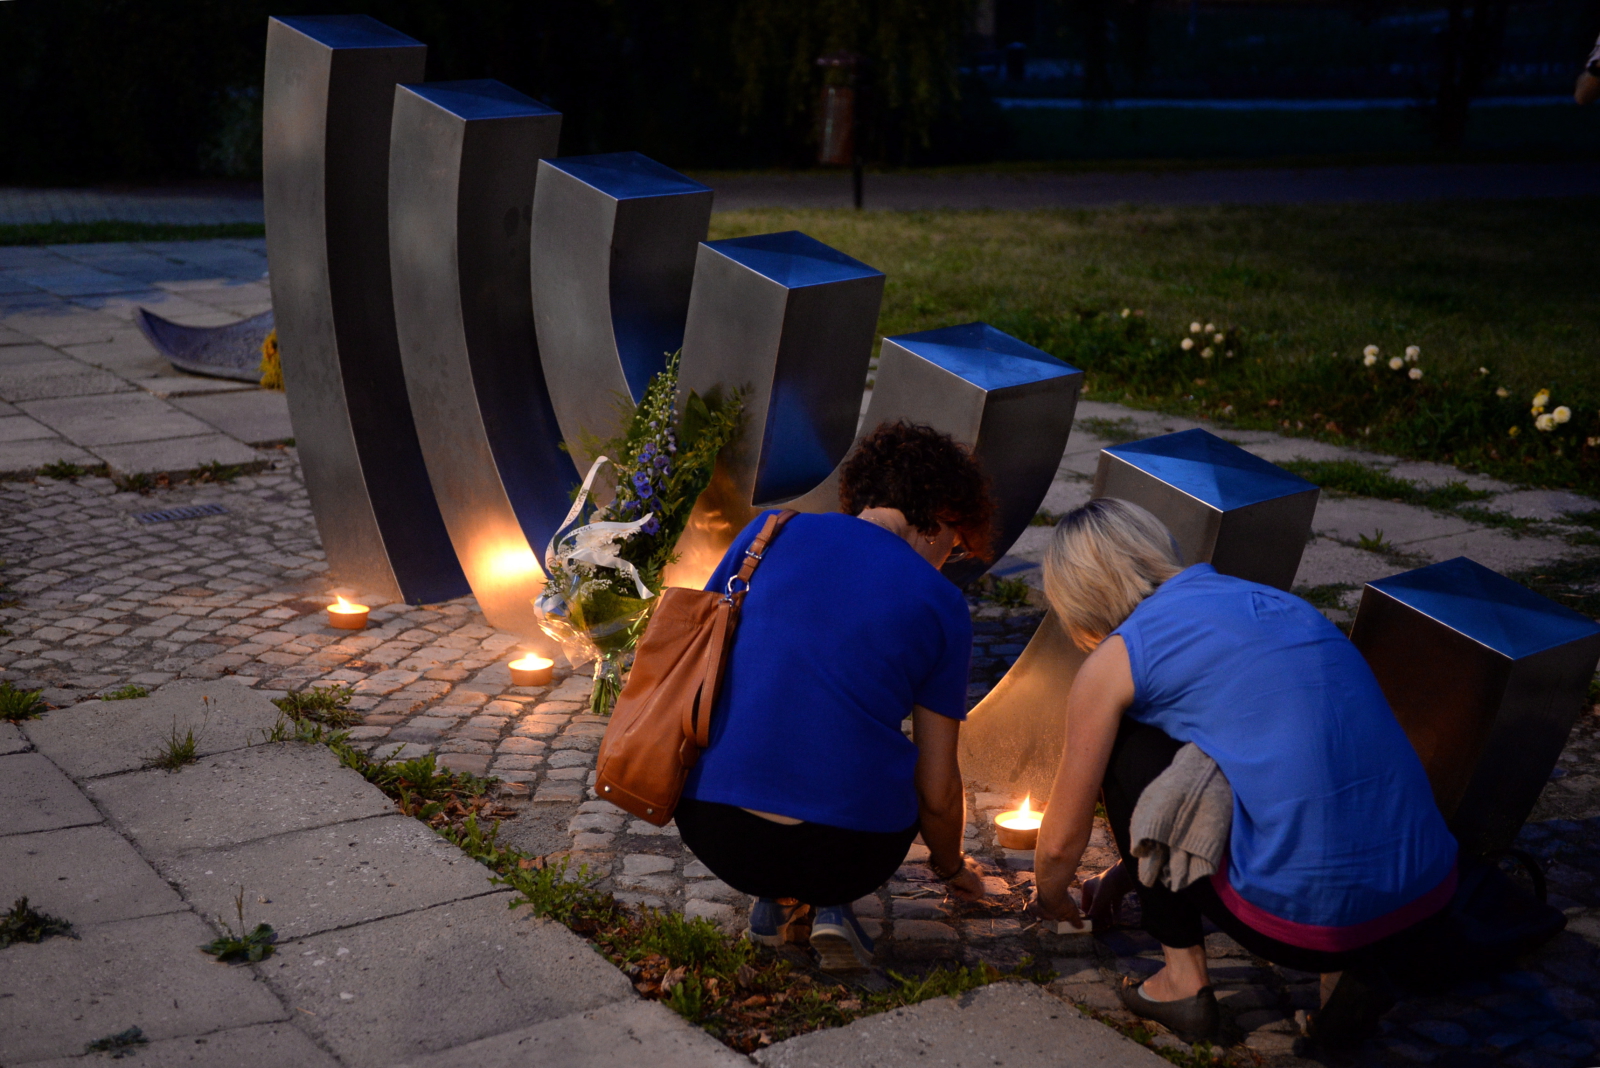 W 75. rocznicę zagłady kieleckiego getta, mieszkańcy miasta uczcili pamięć prawie 30 tys. kieleckich Żydów, zamordowanych przez Niemców podczas okupacji. Uroczystości odbyły się przy pomniku 